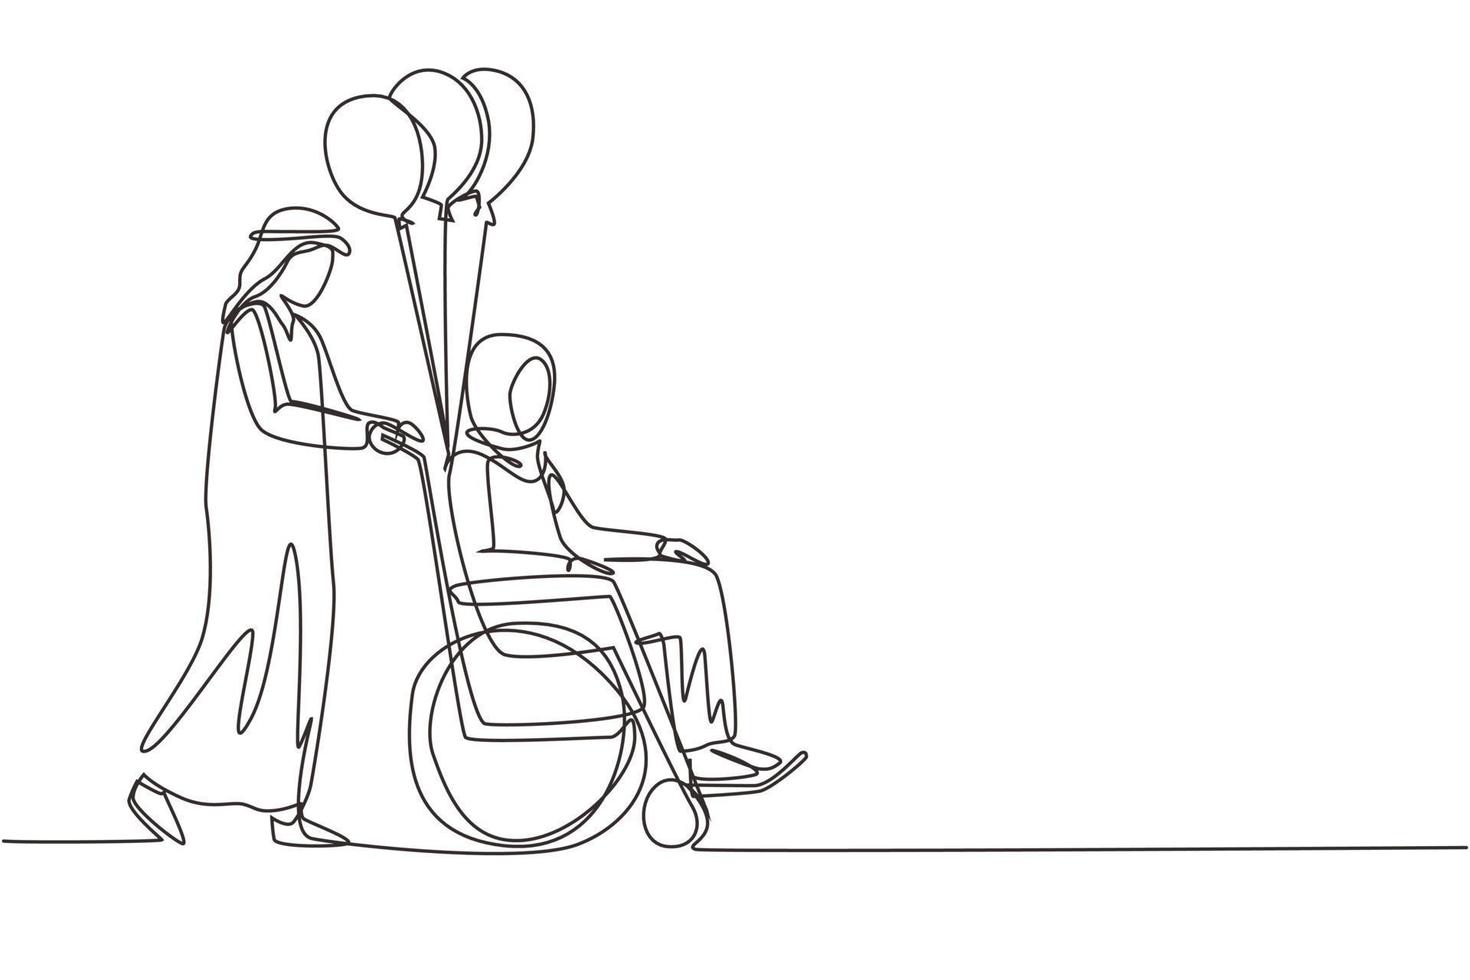 enkele een lijntekening handicap mensen. arabische man draagt gehandicapte vrouw in rolstoel. toegankelijkheid, revalidatie gehandicapten activiteiten. doorlopende lijn tekenen ontwerp vectorillustratie vector